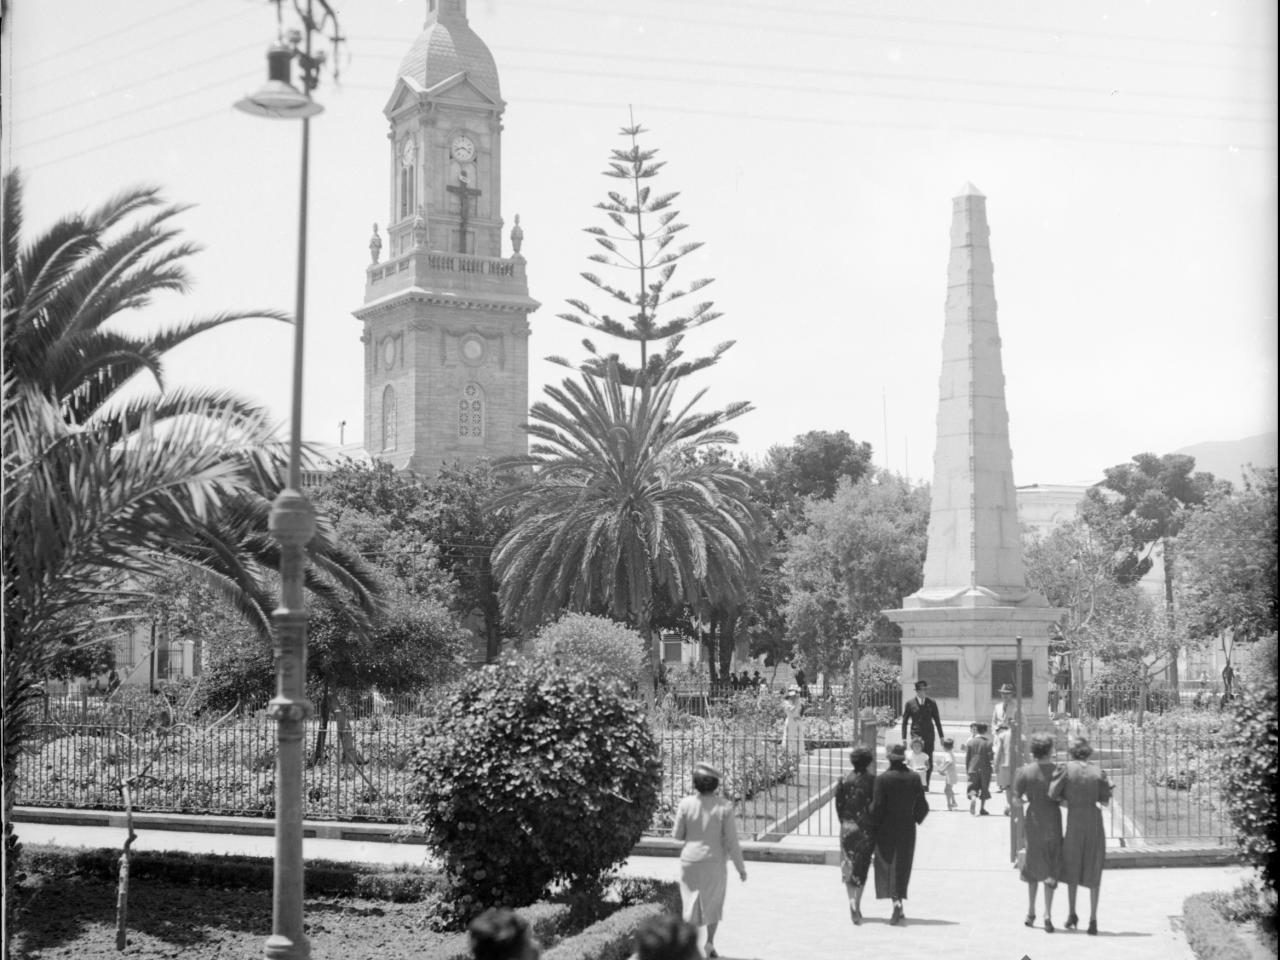 Plaza de Armas La Serena. Vista hacia Catedral, obelisco en medio de la plaza, al menos doce personas caminando